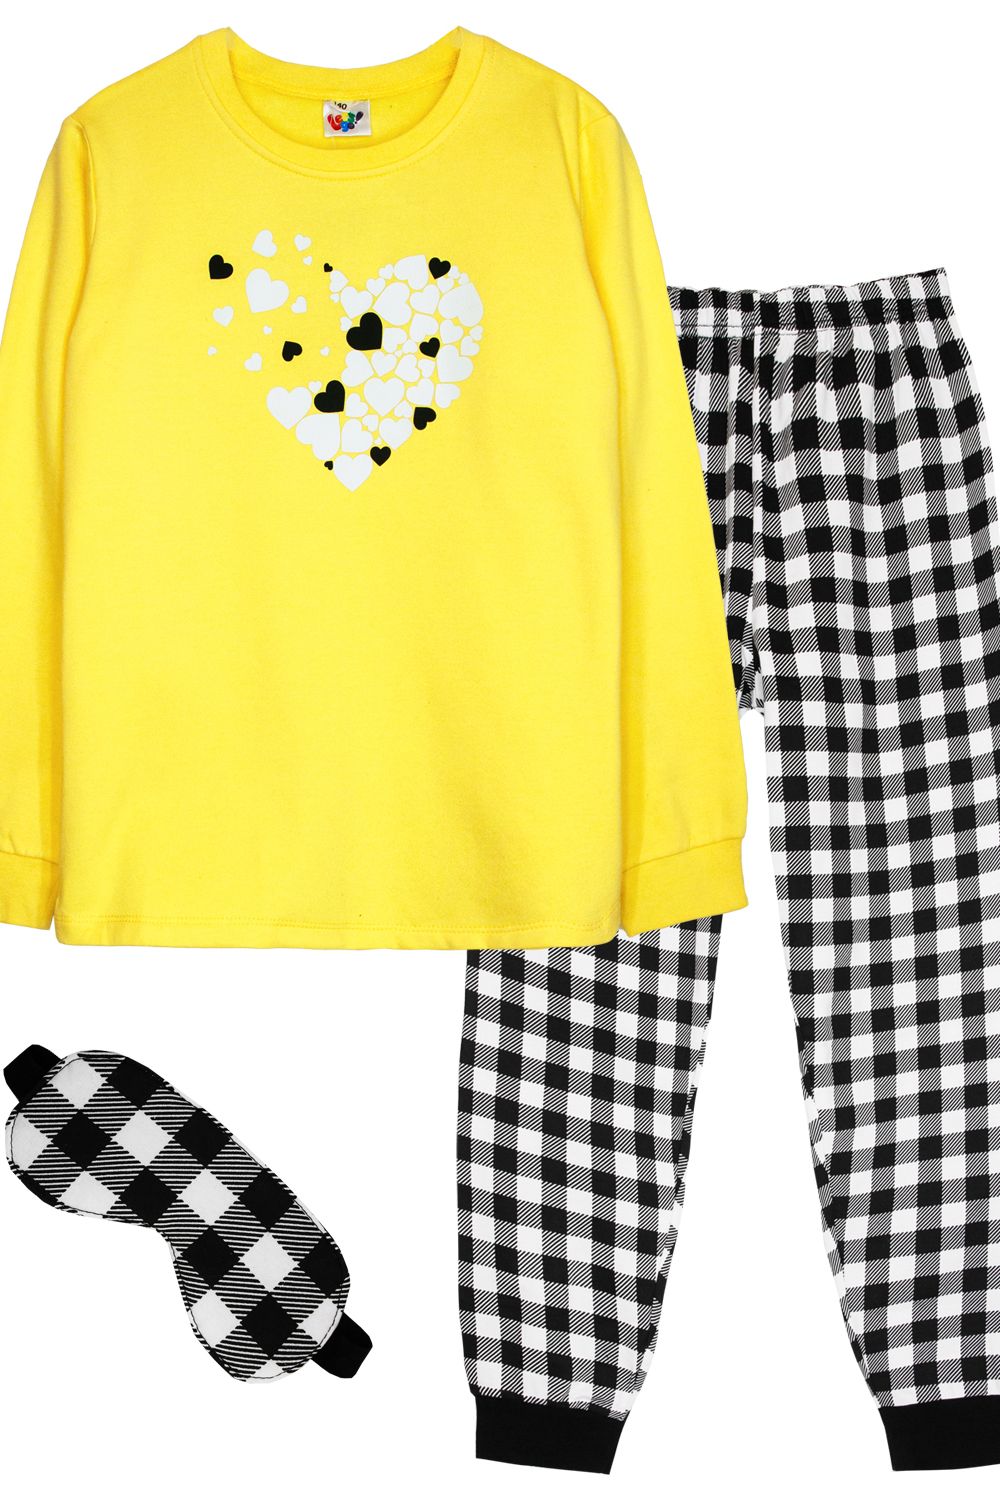 Пижама для девочки 91228 - желтый/черная клетка